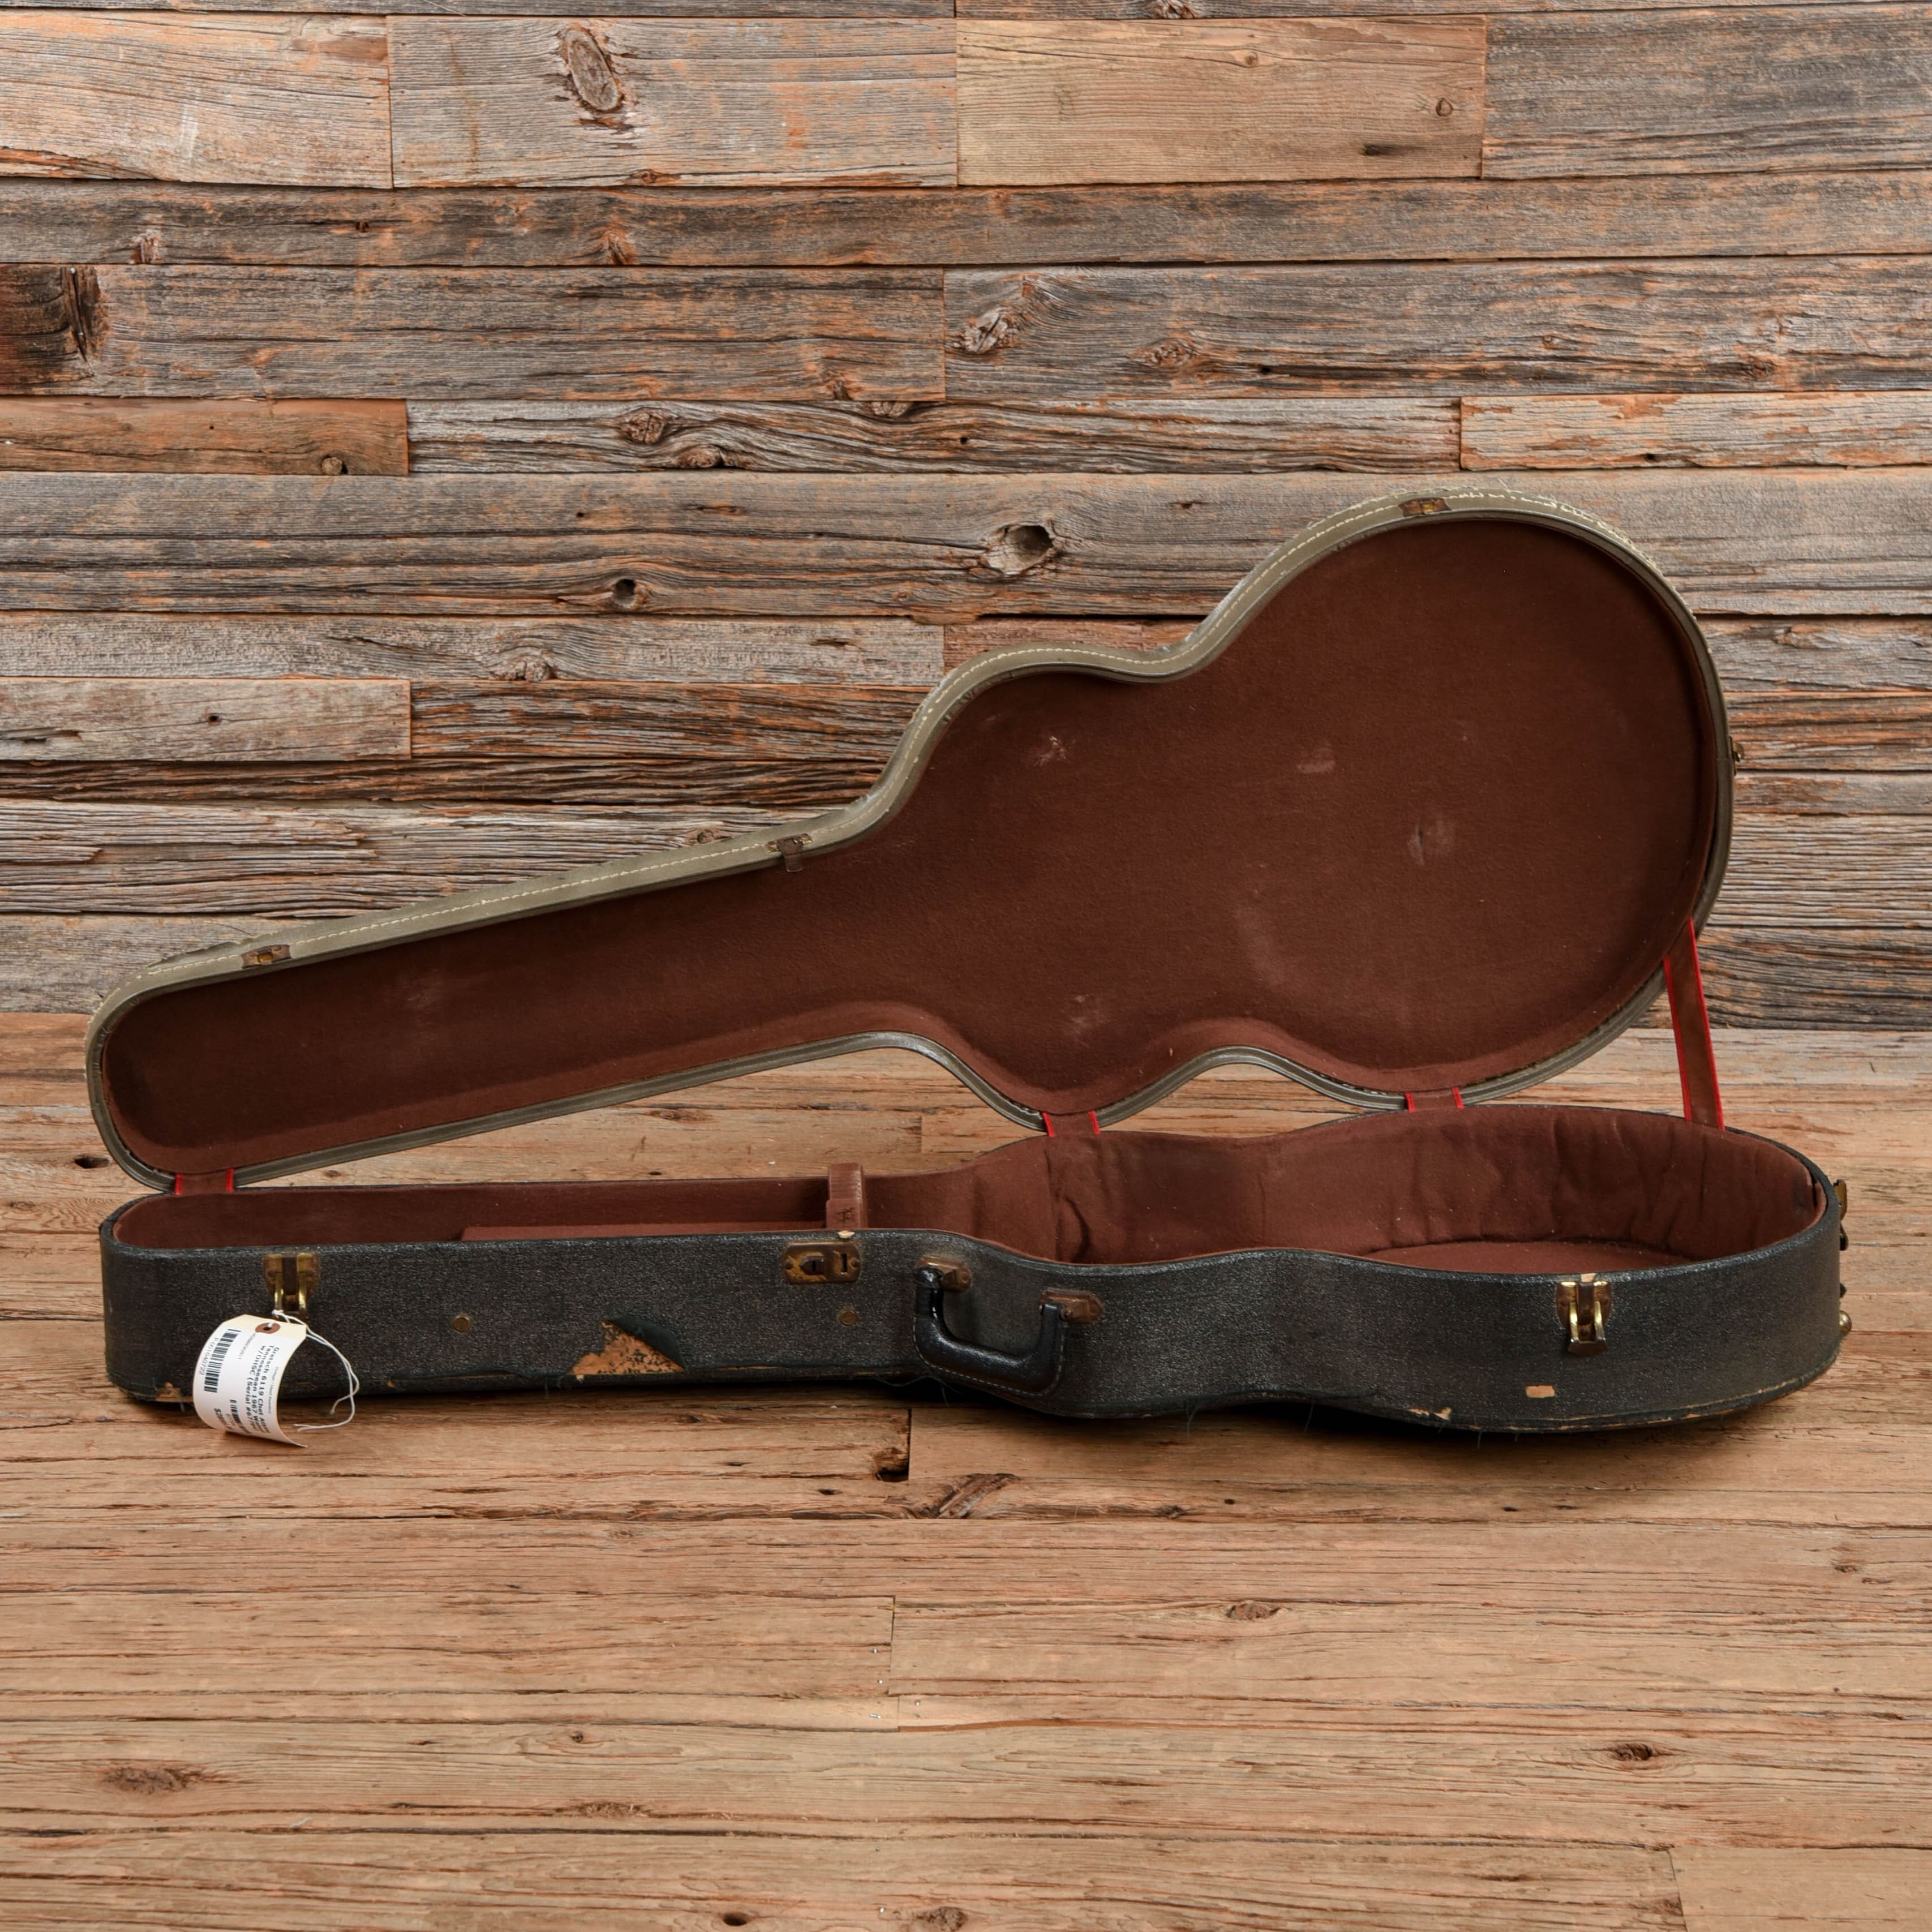 Gretsch 6119 Chet Atkins Tennesseean Walnut 1964 Electric Guitars / Hollow Body